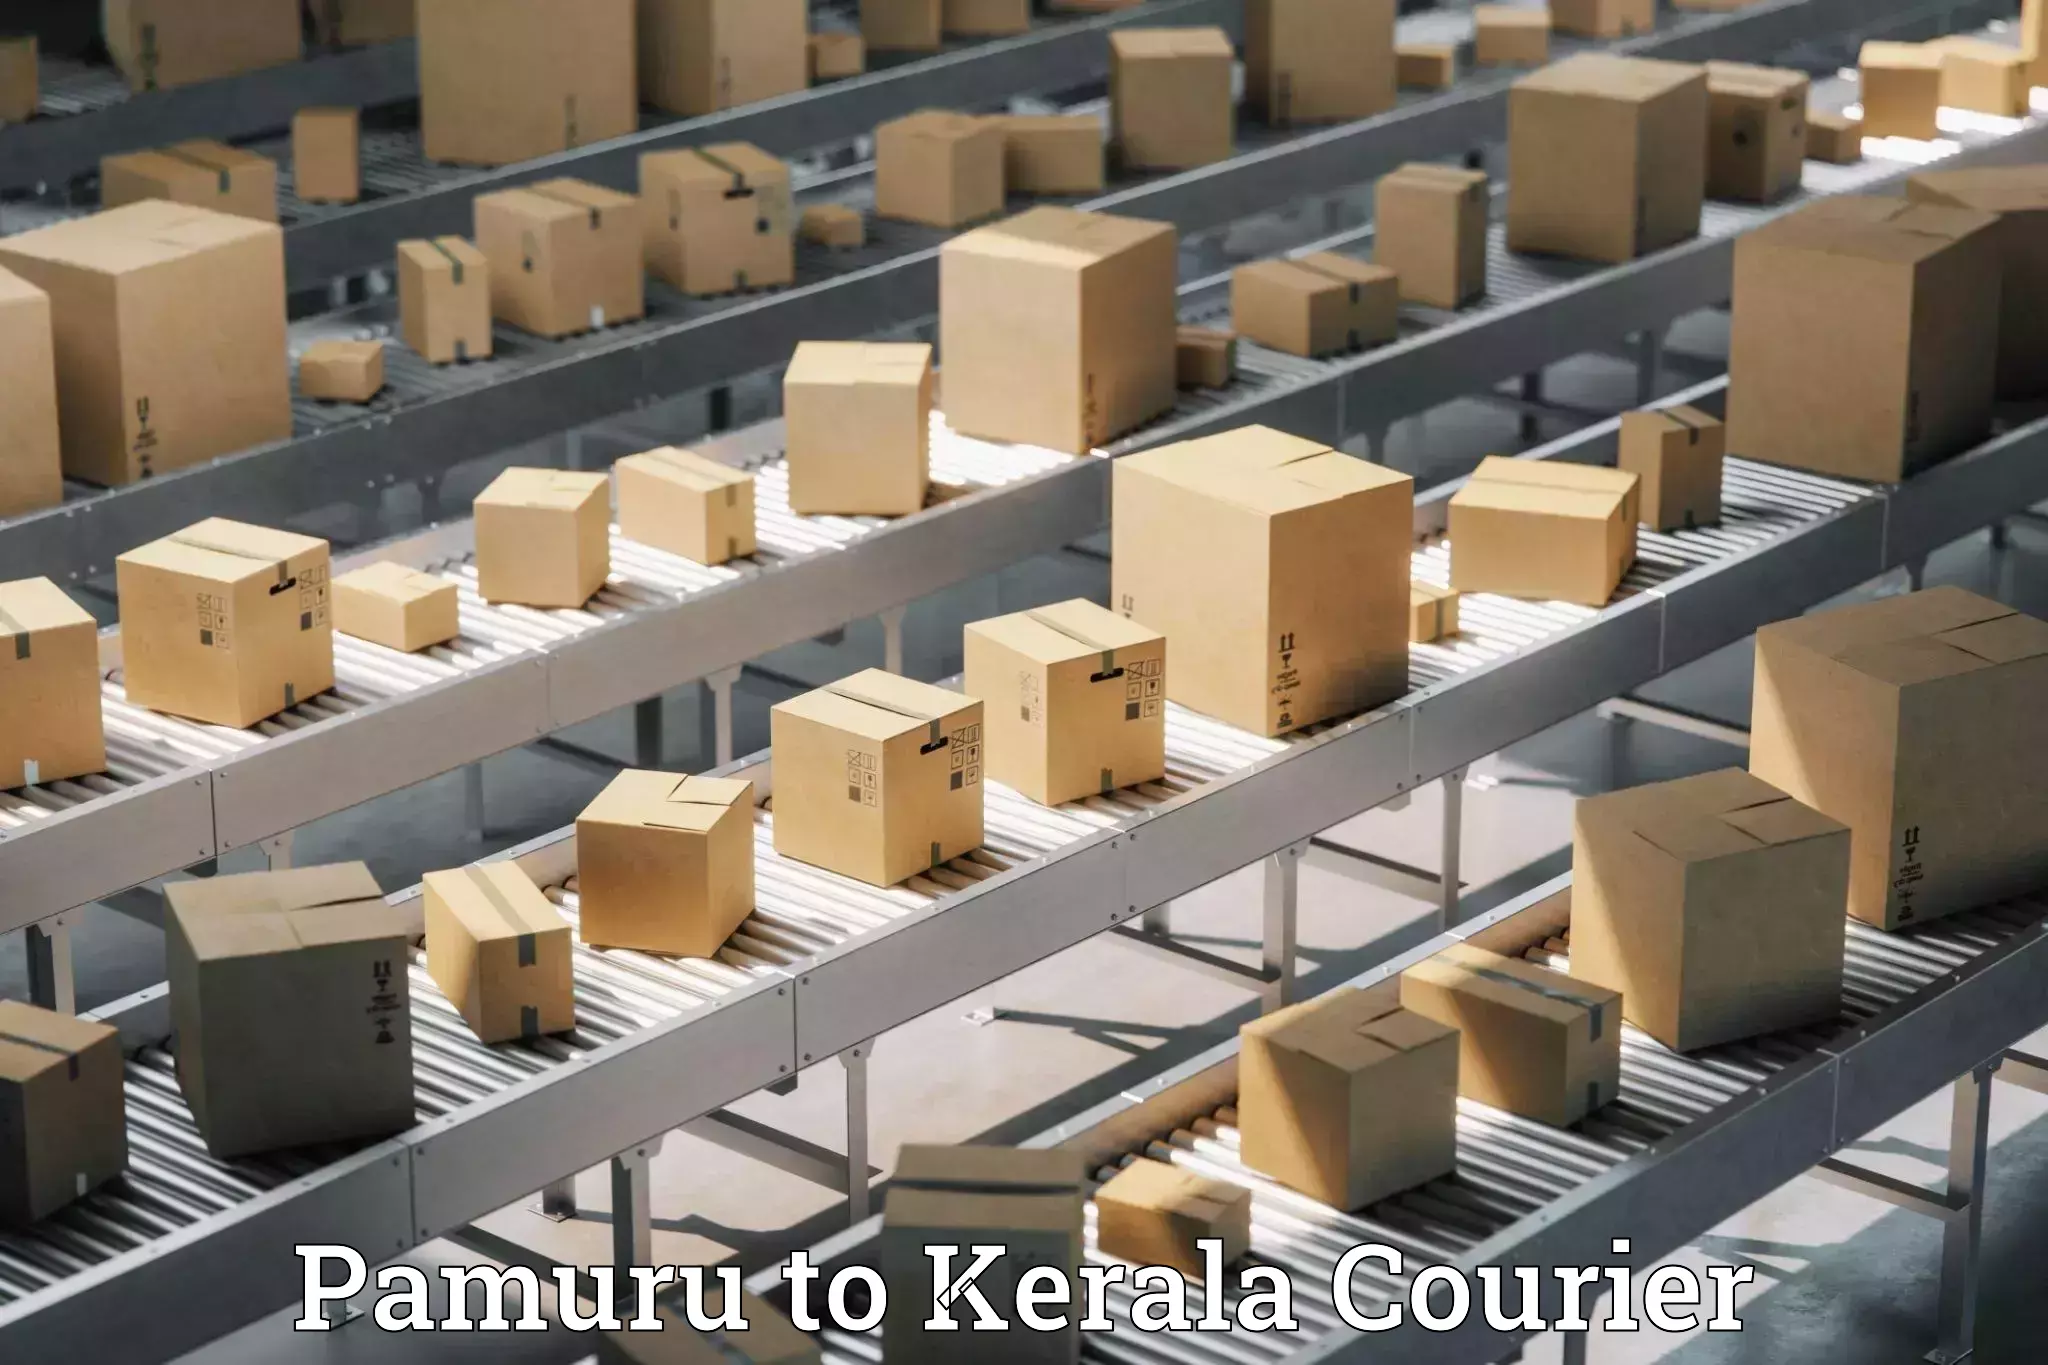 Comprehensive shipping network Pamuru to Kerala